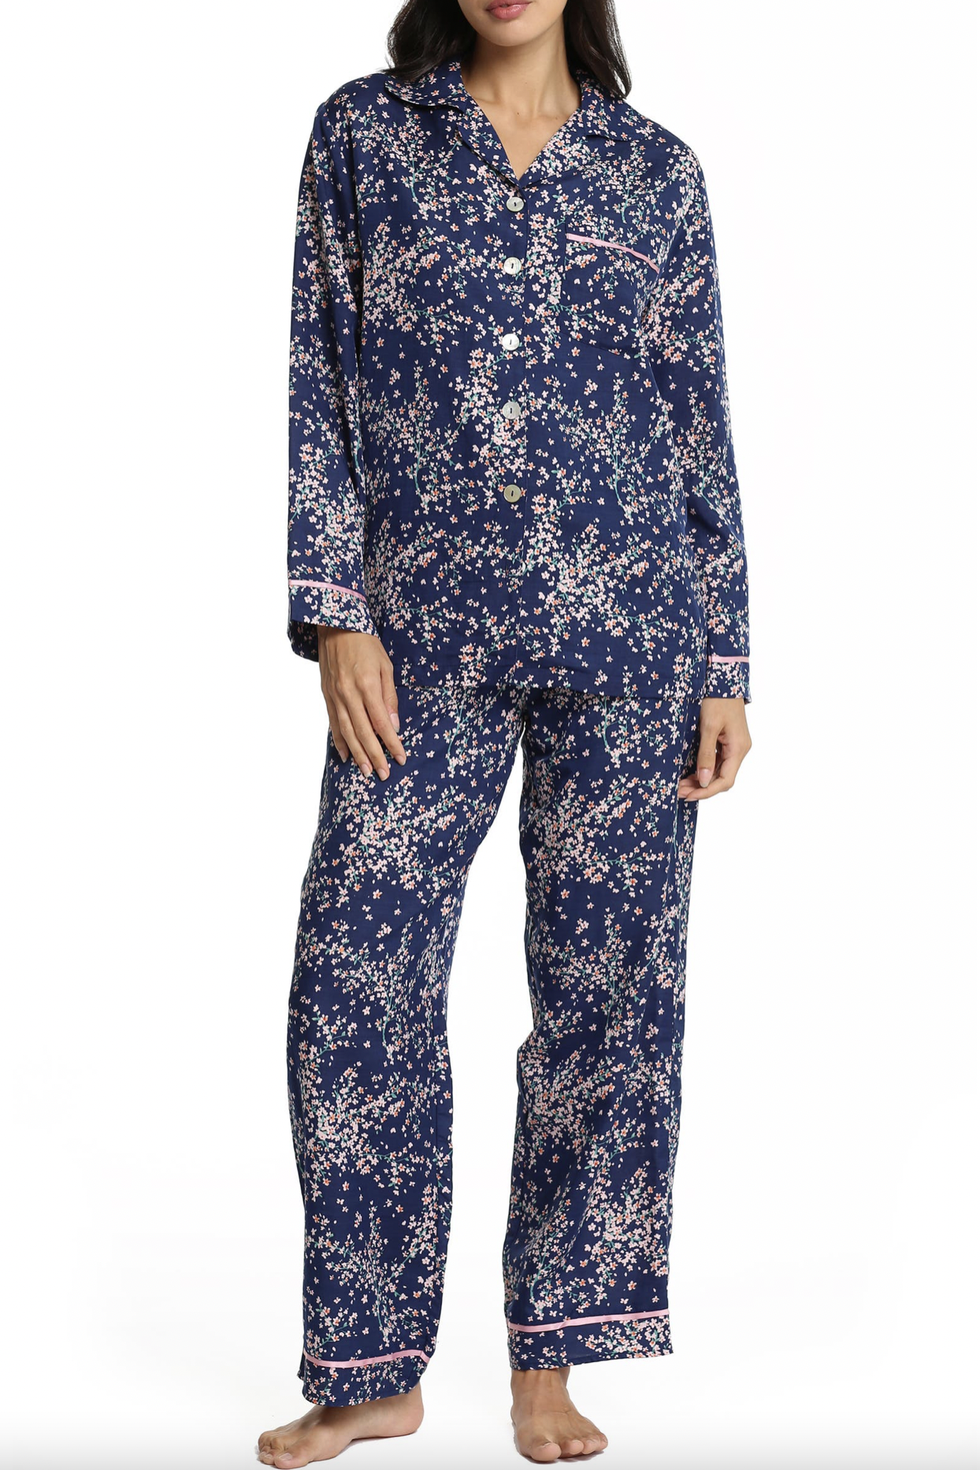 Papinelle Cheri Blossom Cotton & Silk Pajamas